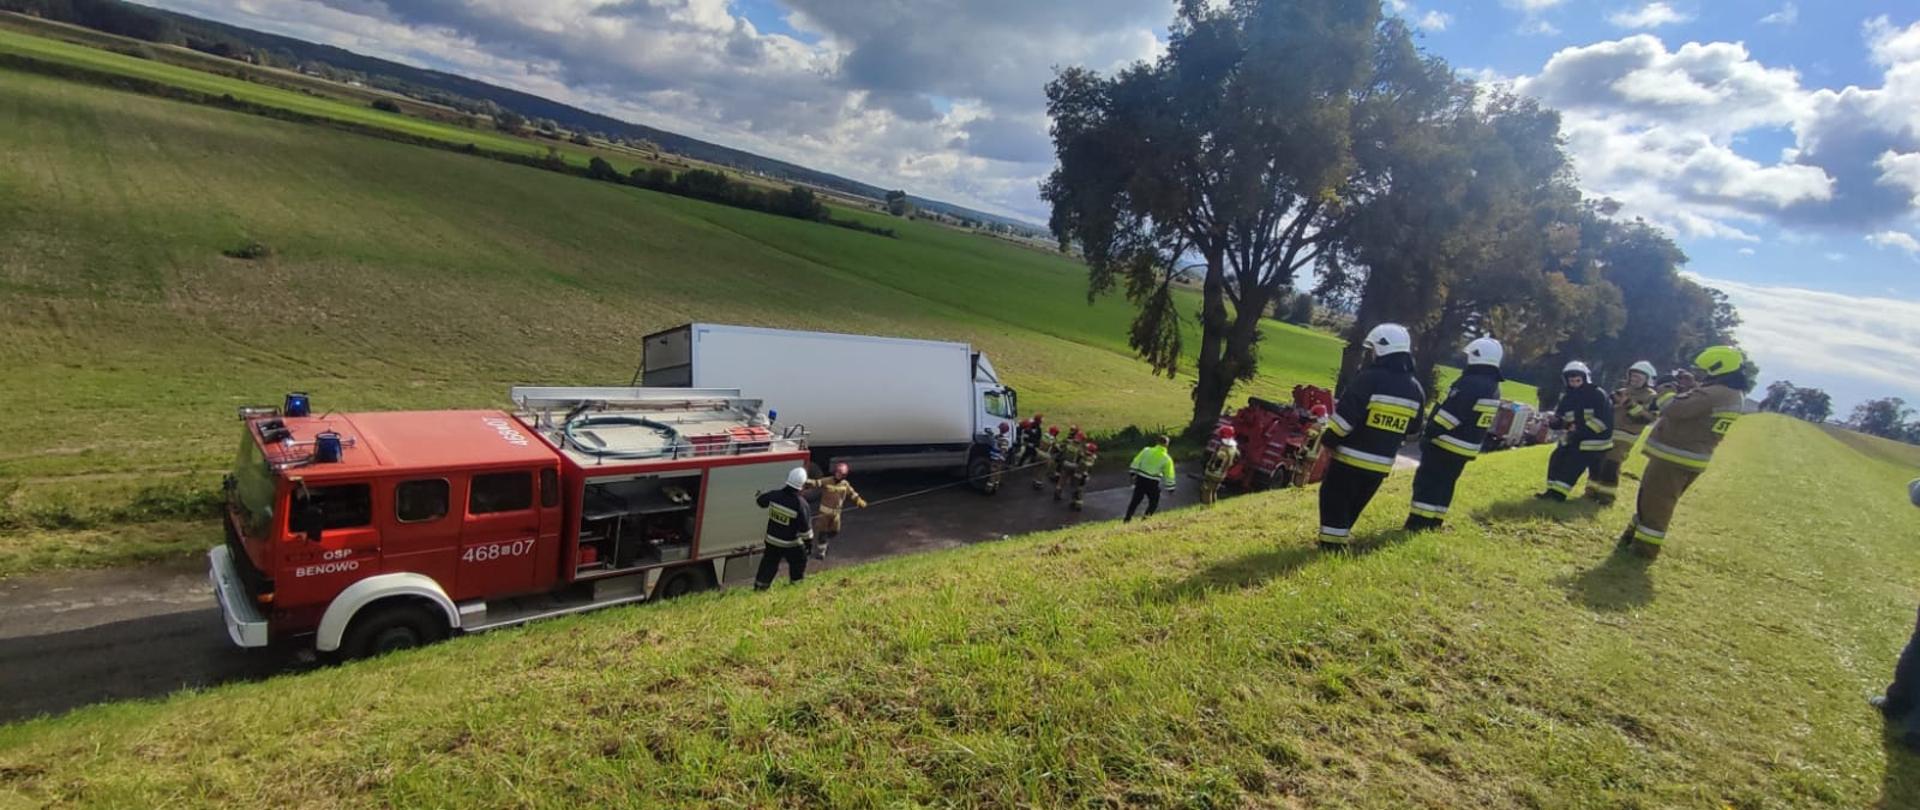 Samochód ciężarowy zagrożony przewróceniem oraz pojazdy ratownicze i strażacy stoją na jezdni